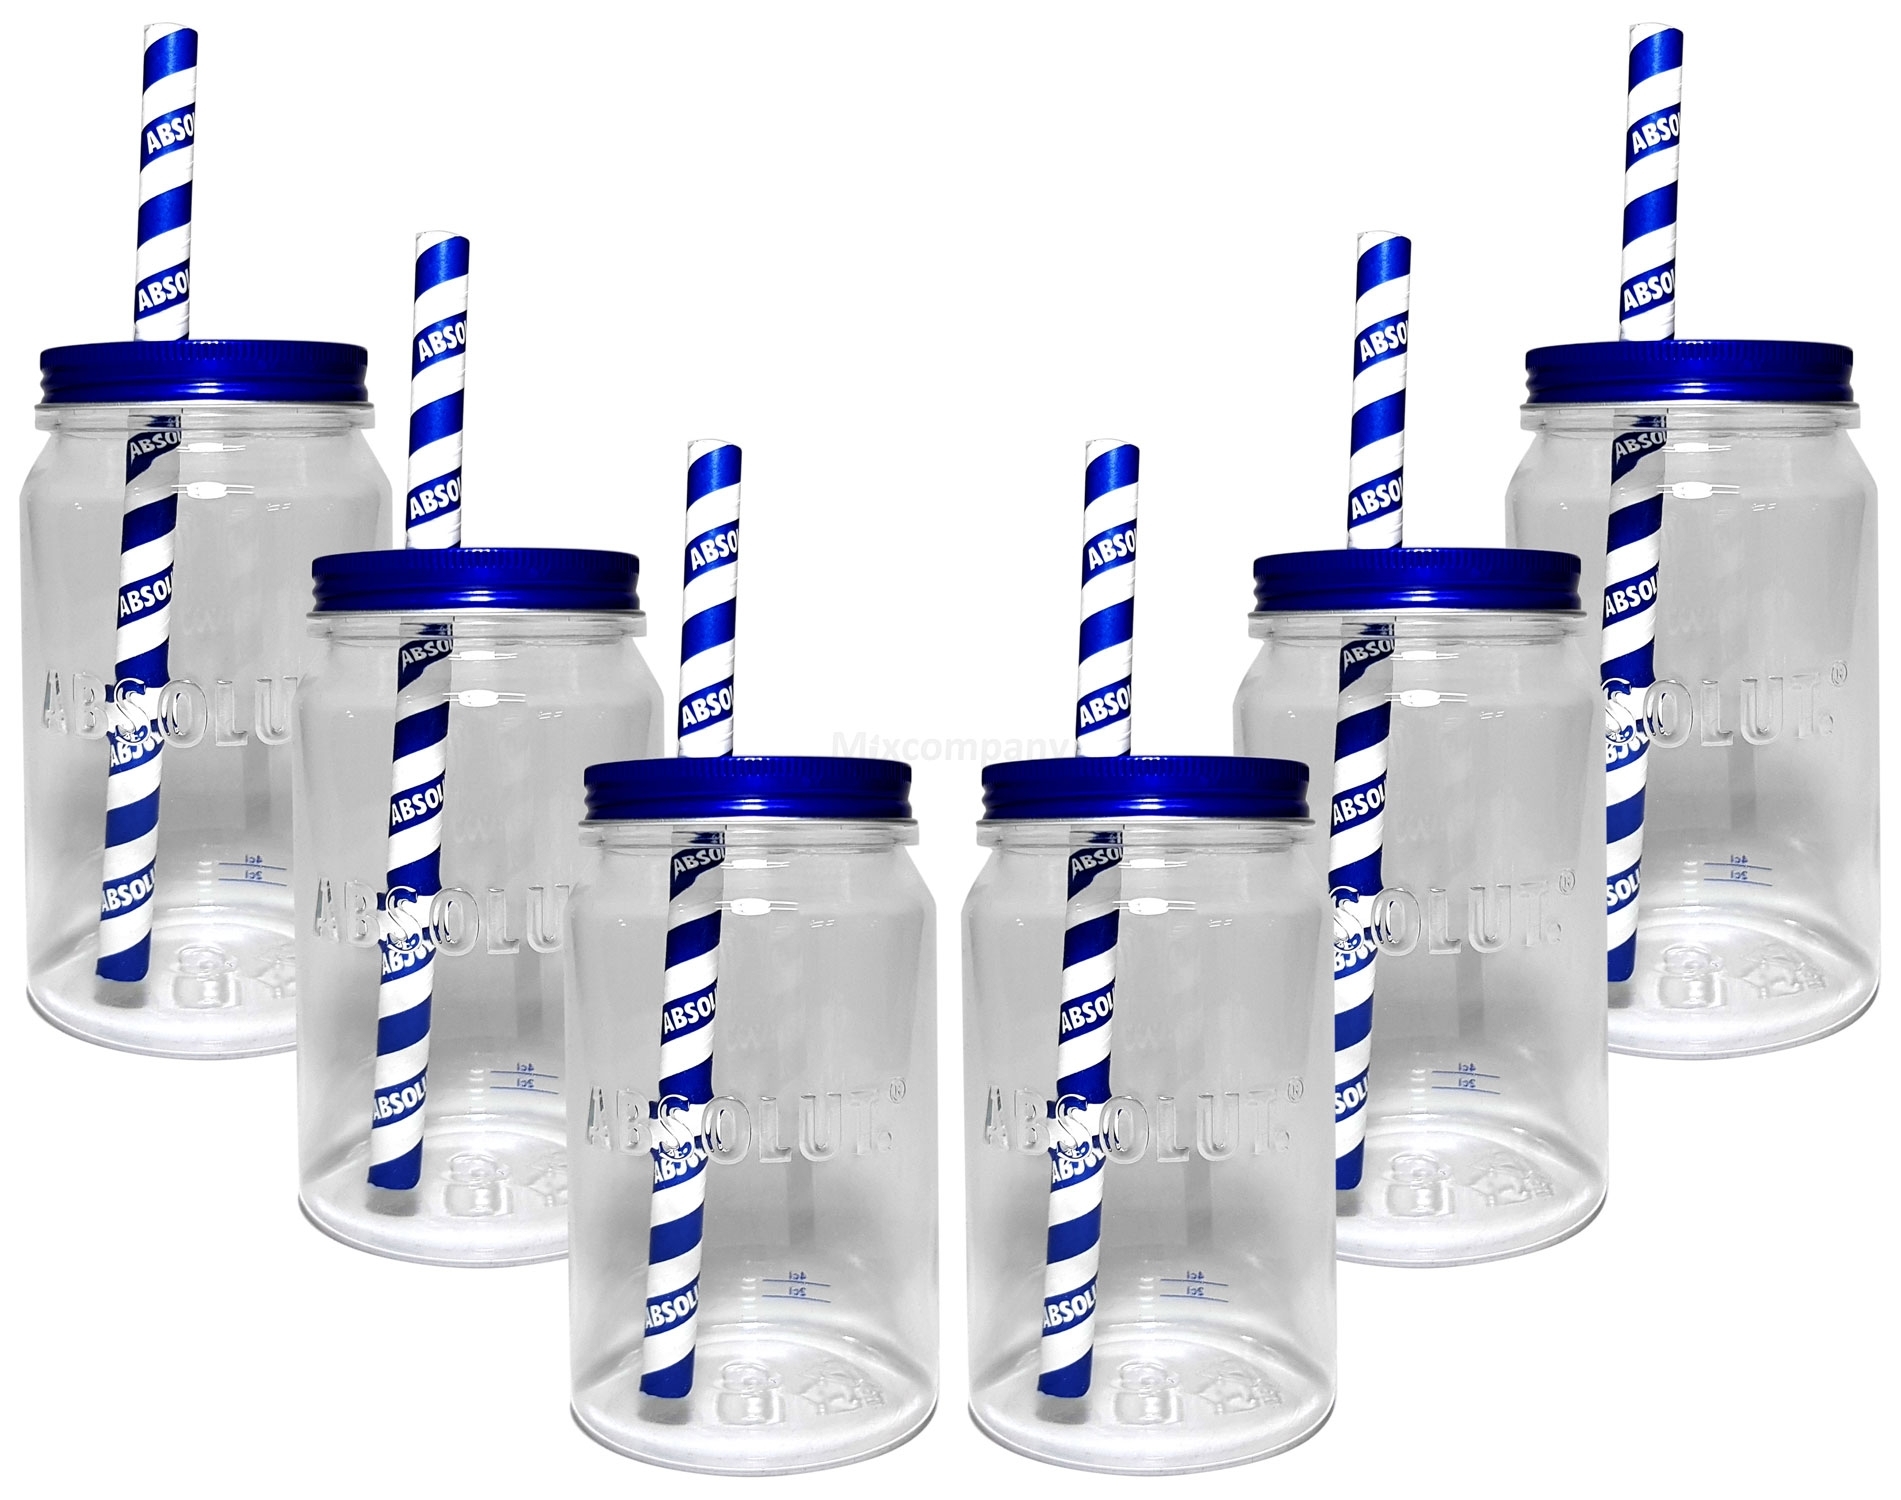 Absolut Vodka Gläserset - 6x Longdrink Lynchburg Glas Gläser aus Kunststoff mit Deckel 2/4cl geeicht + 6x Strohhalme